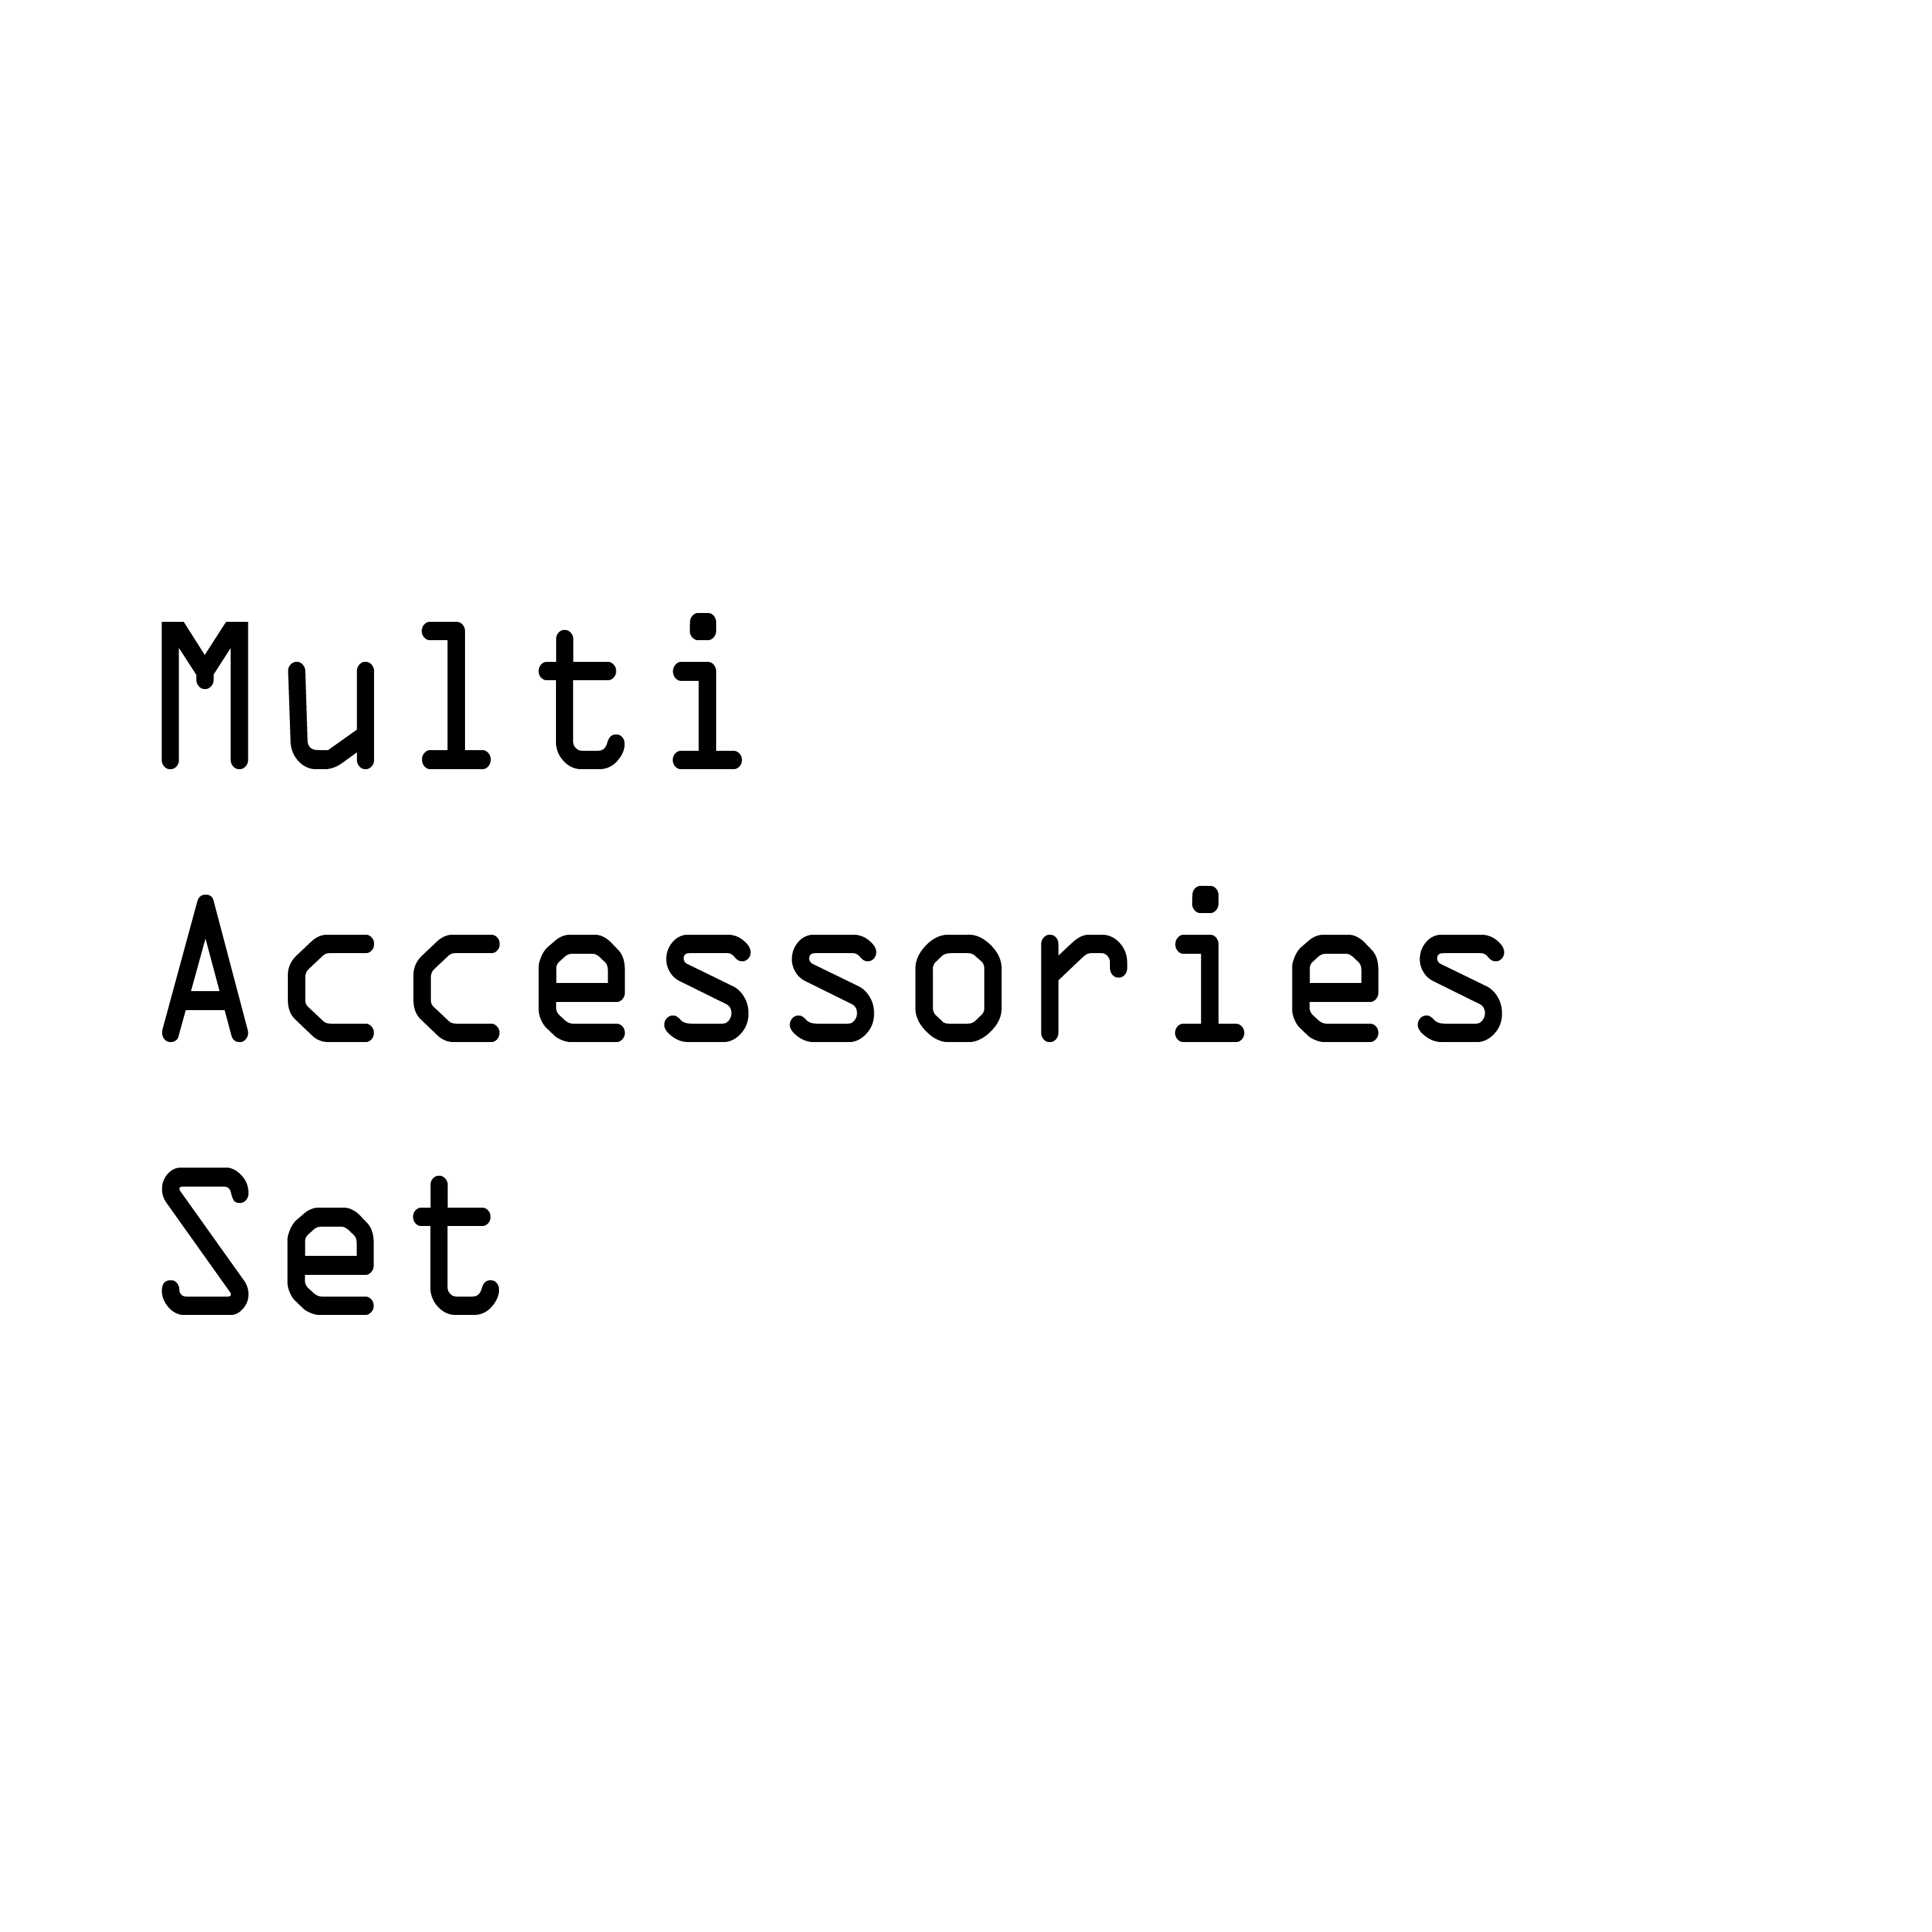 Multi-Accessories Set